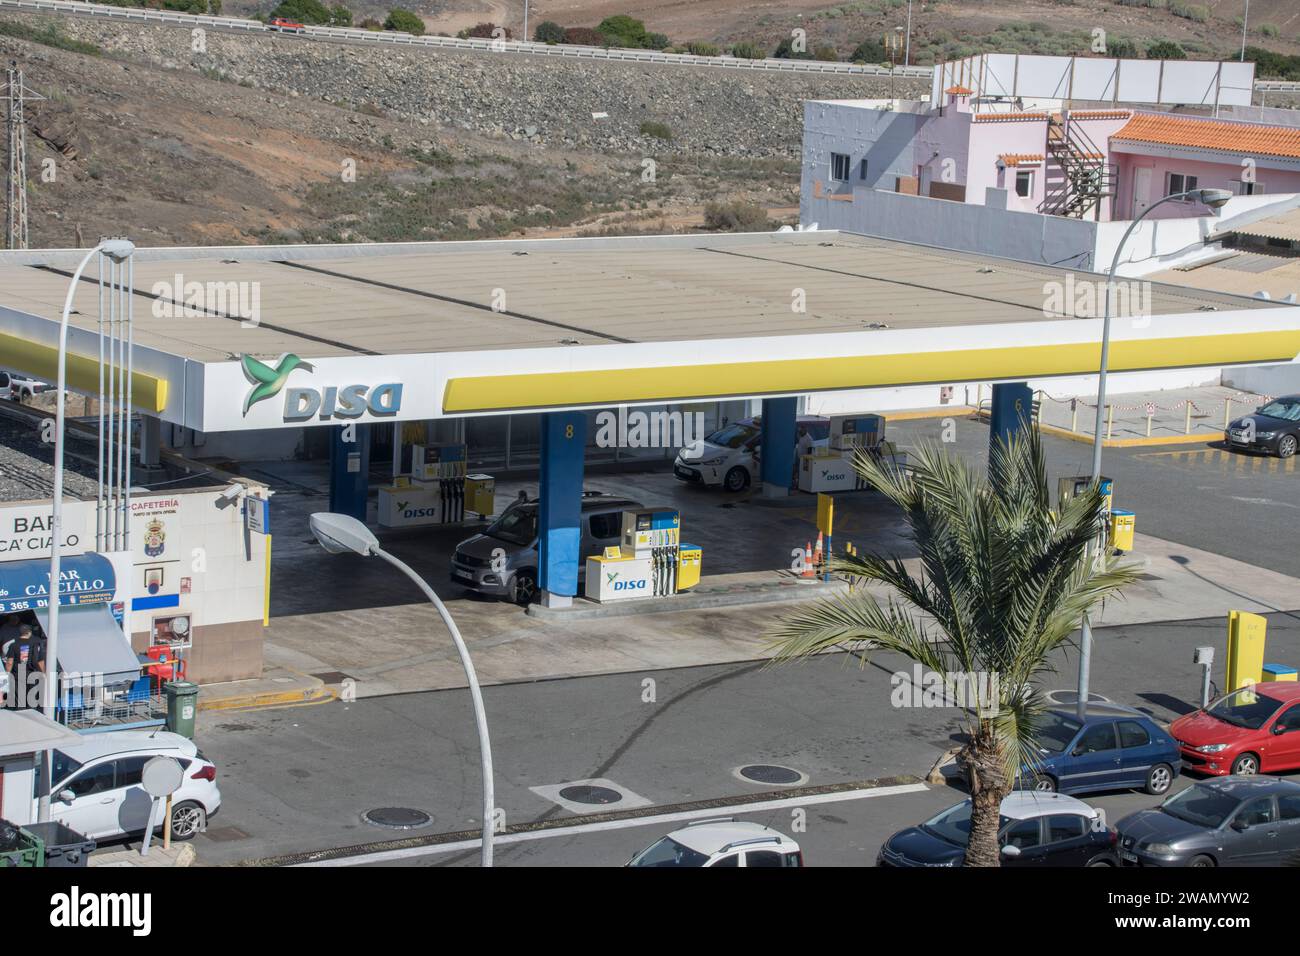 DISA-Tankstelle, Maspalomas, Gran Canaria, SpanienDISA ist das erste kanarische Unternehmen für den Vertrieb von Energieprodukten und der erste unabhä Foto Stock